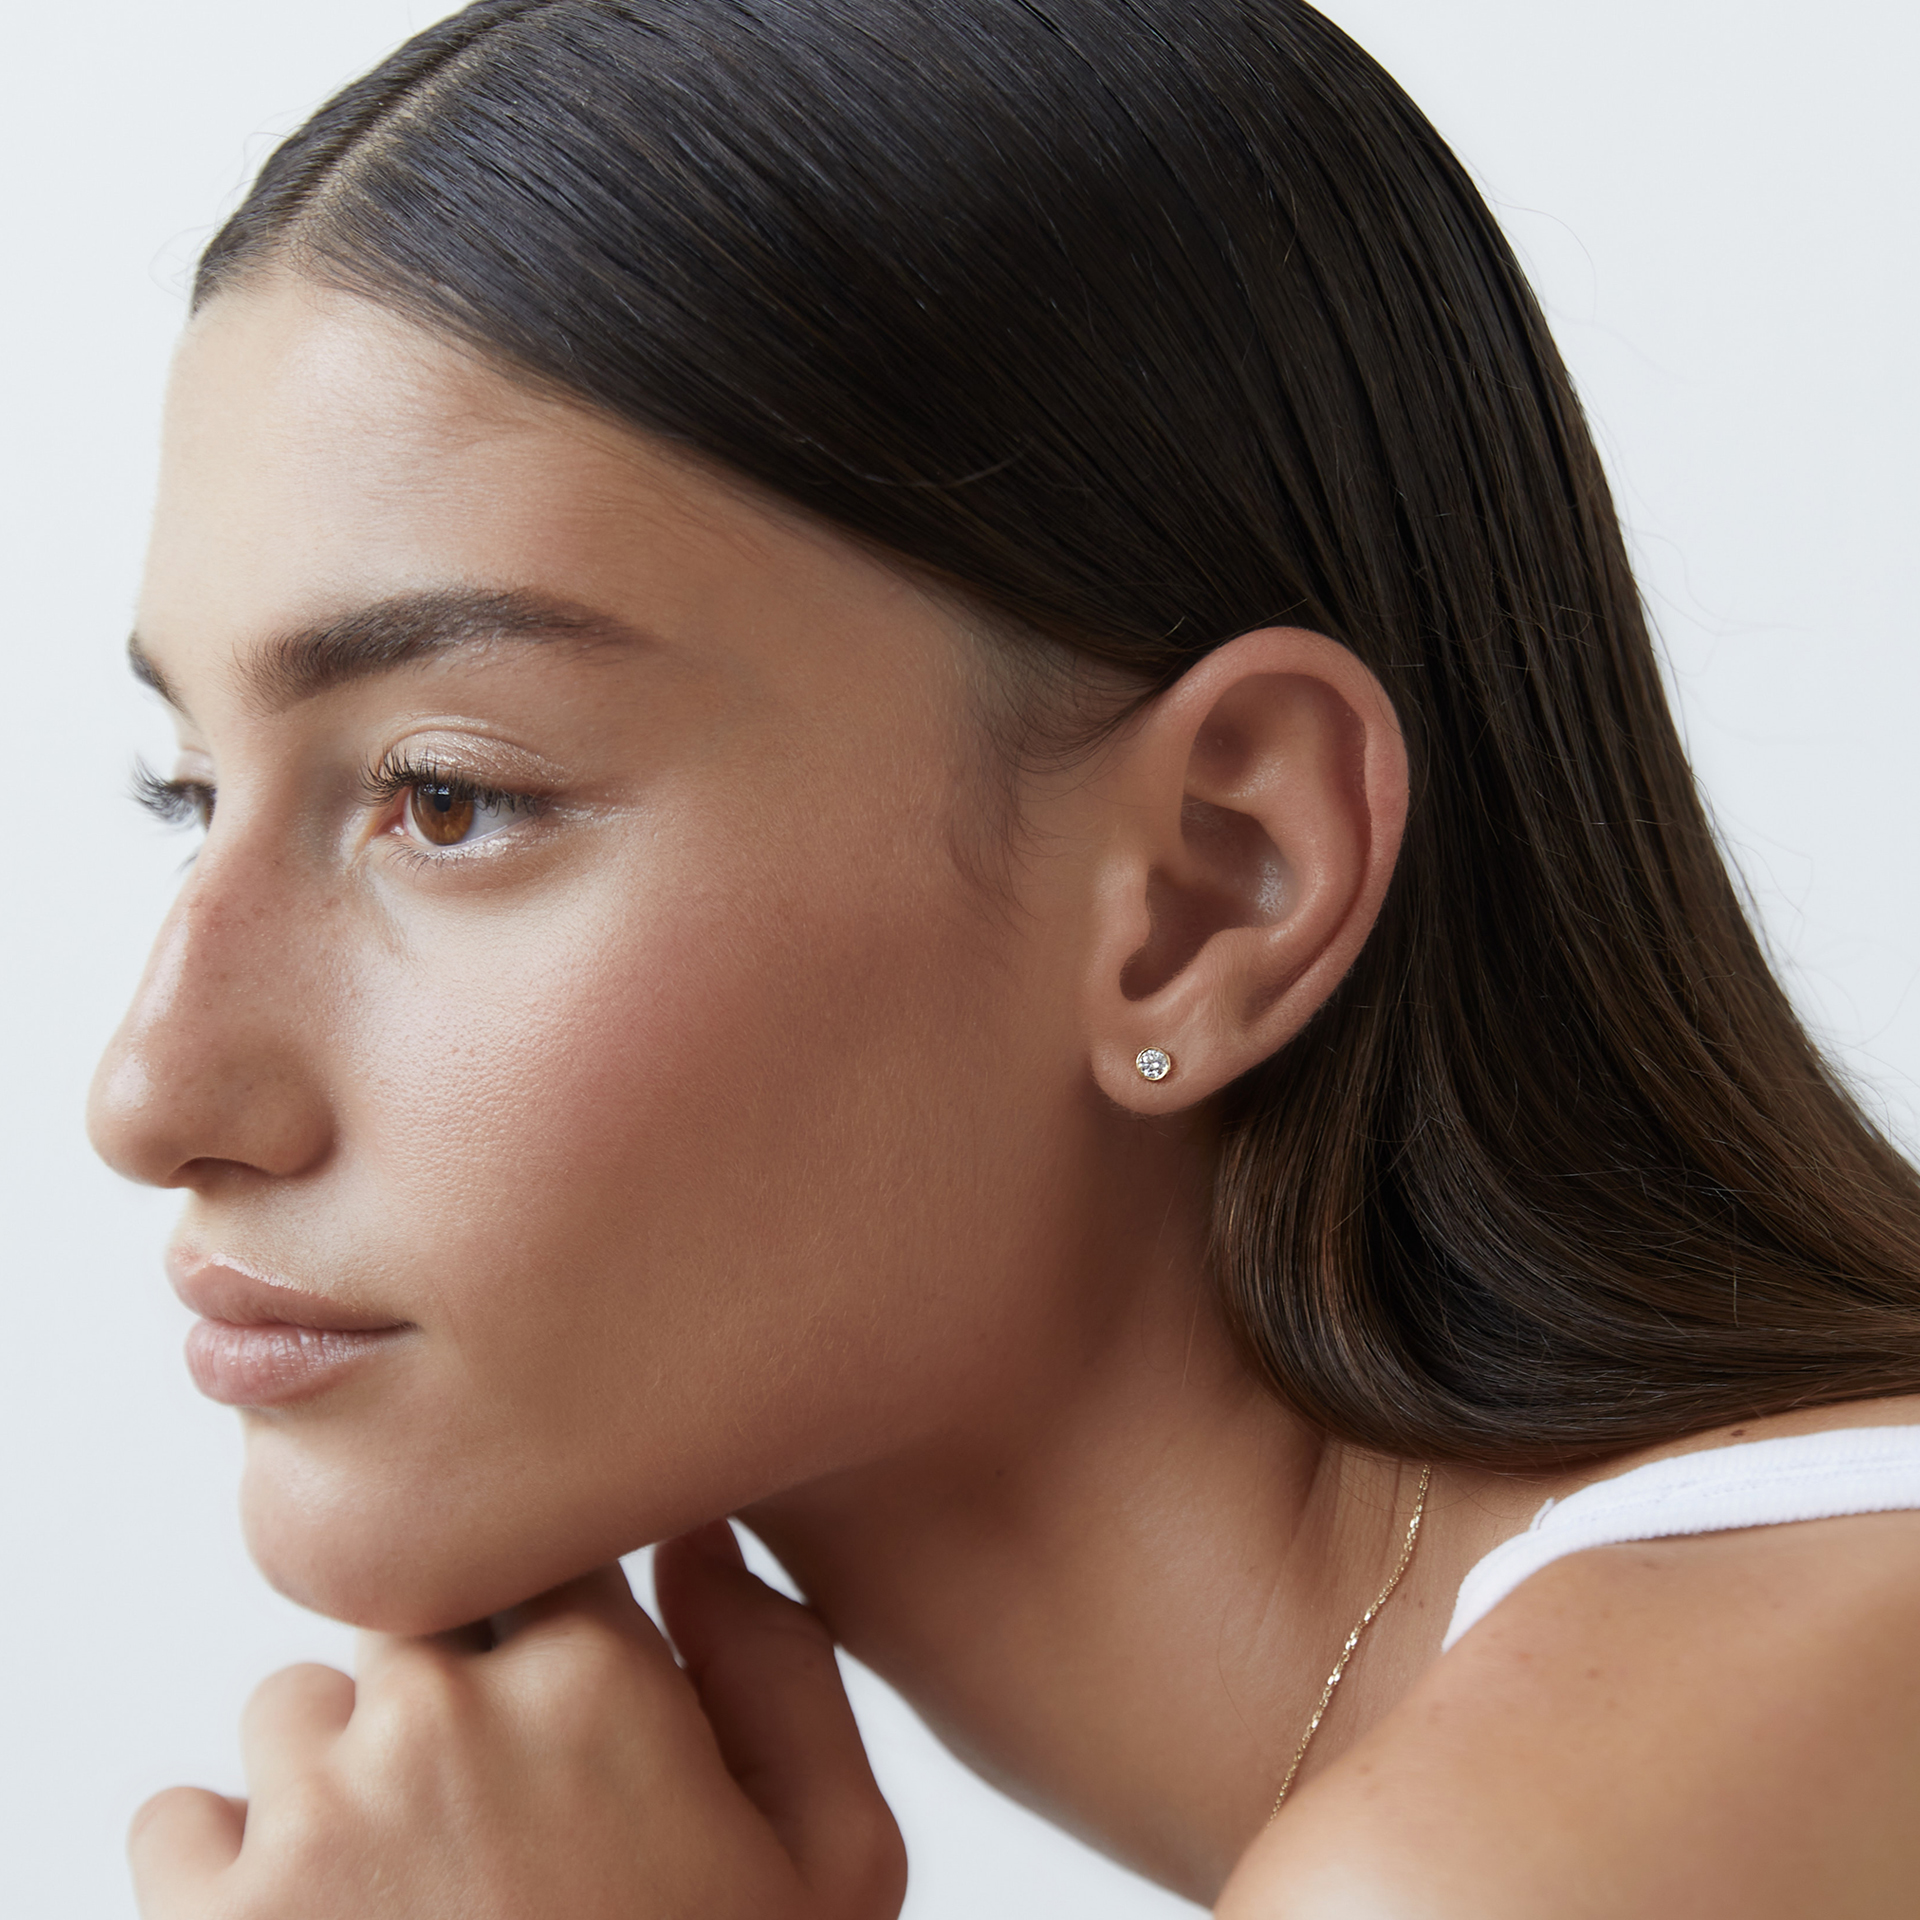 15 Best Lab-Grown Diamond Stud Earrings of 2023